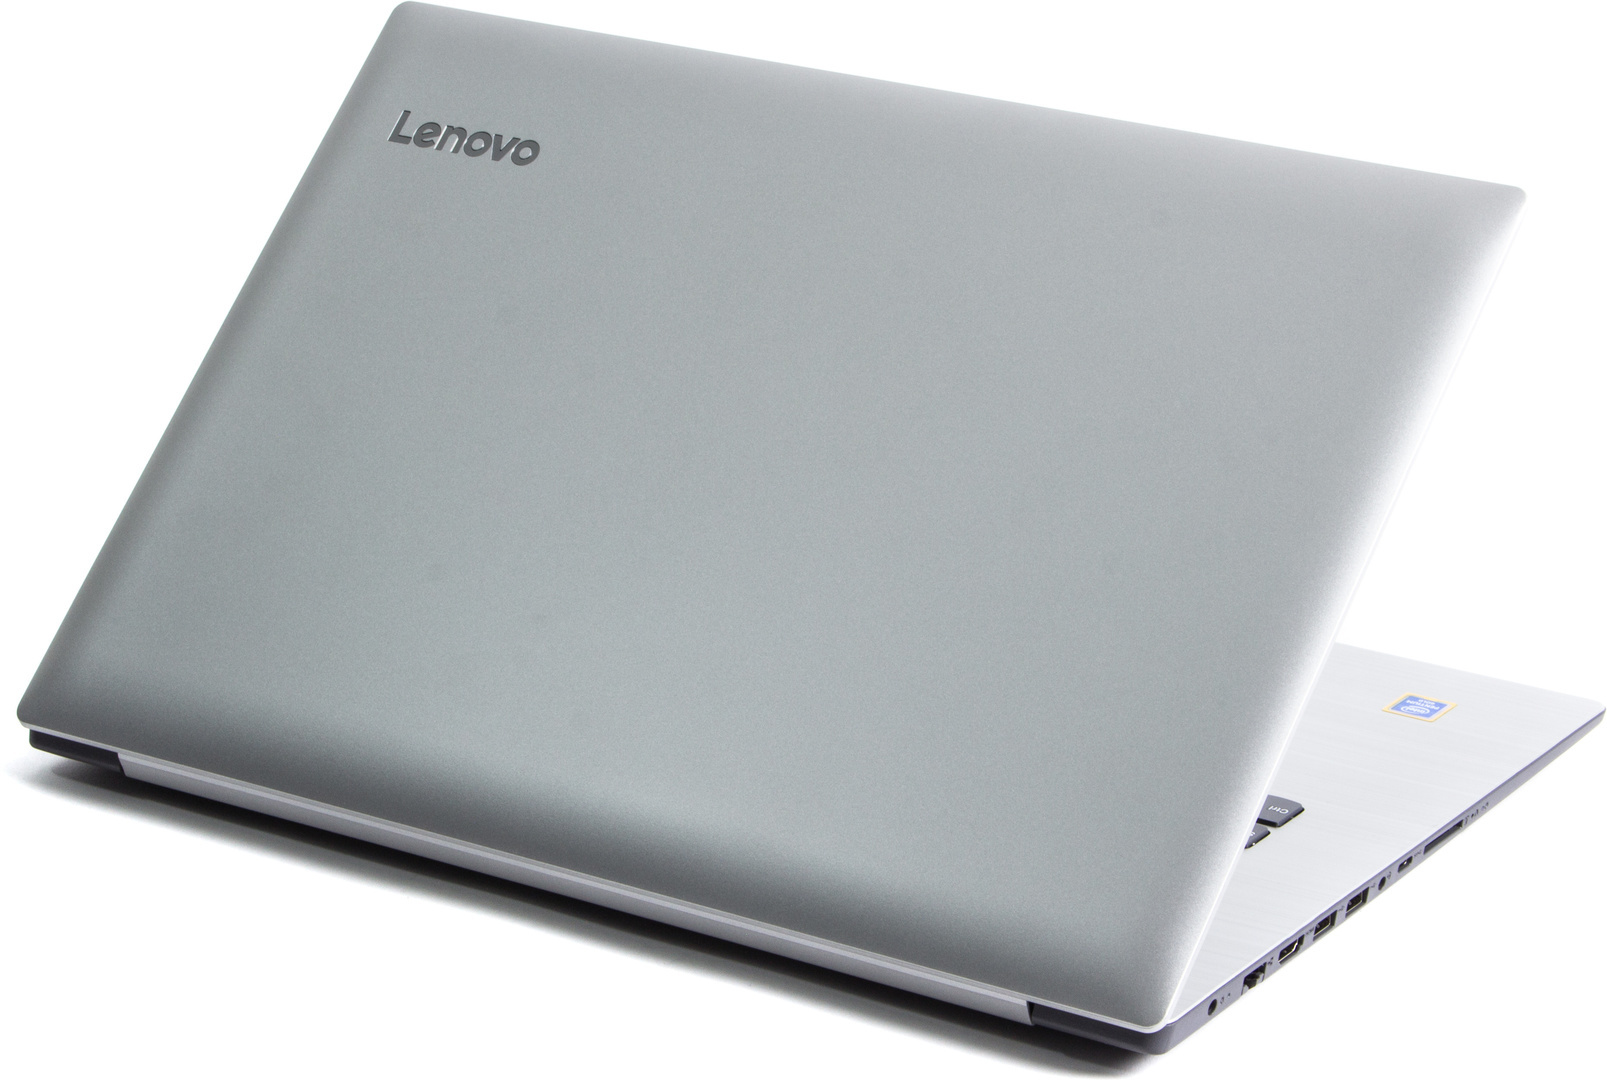 Lenovo 320-17IKB (80XM00K6MH) laptop - Hardware Info